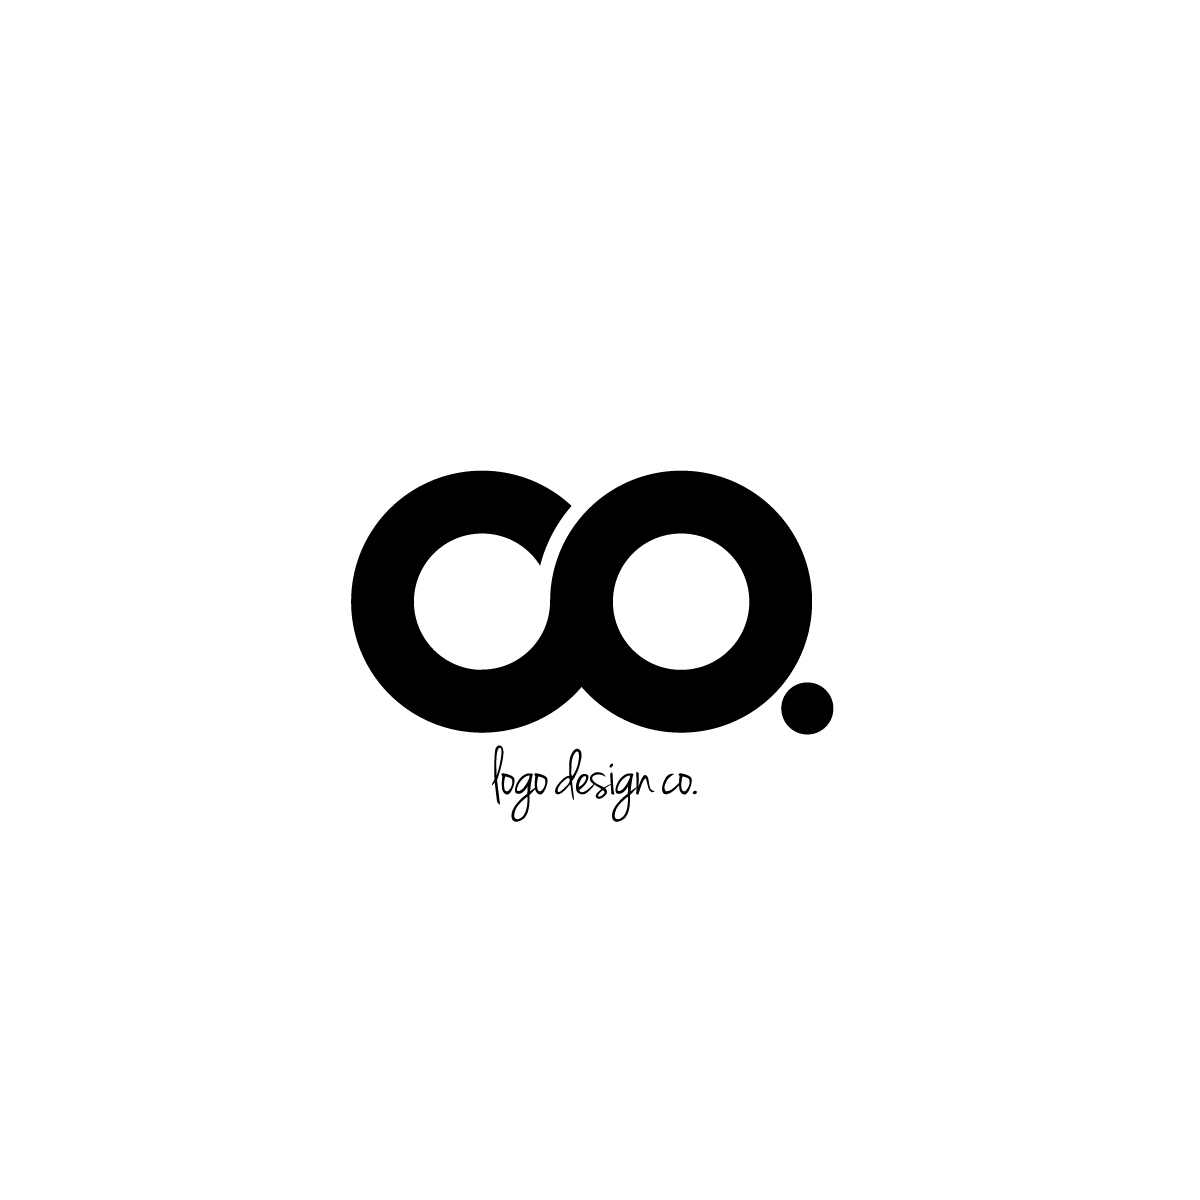 Logo Design Co logo